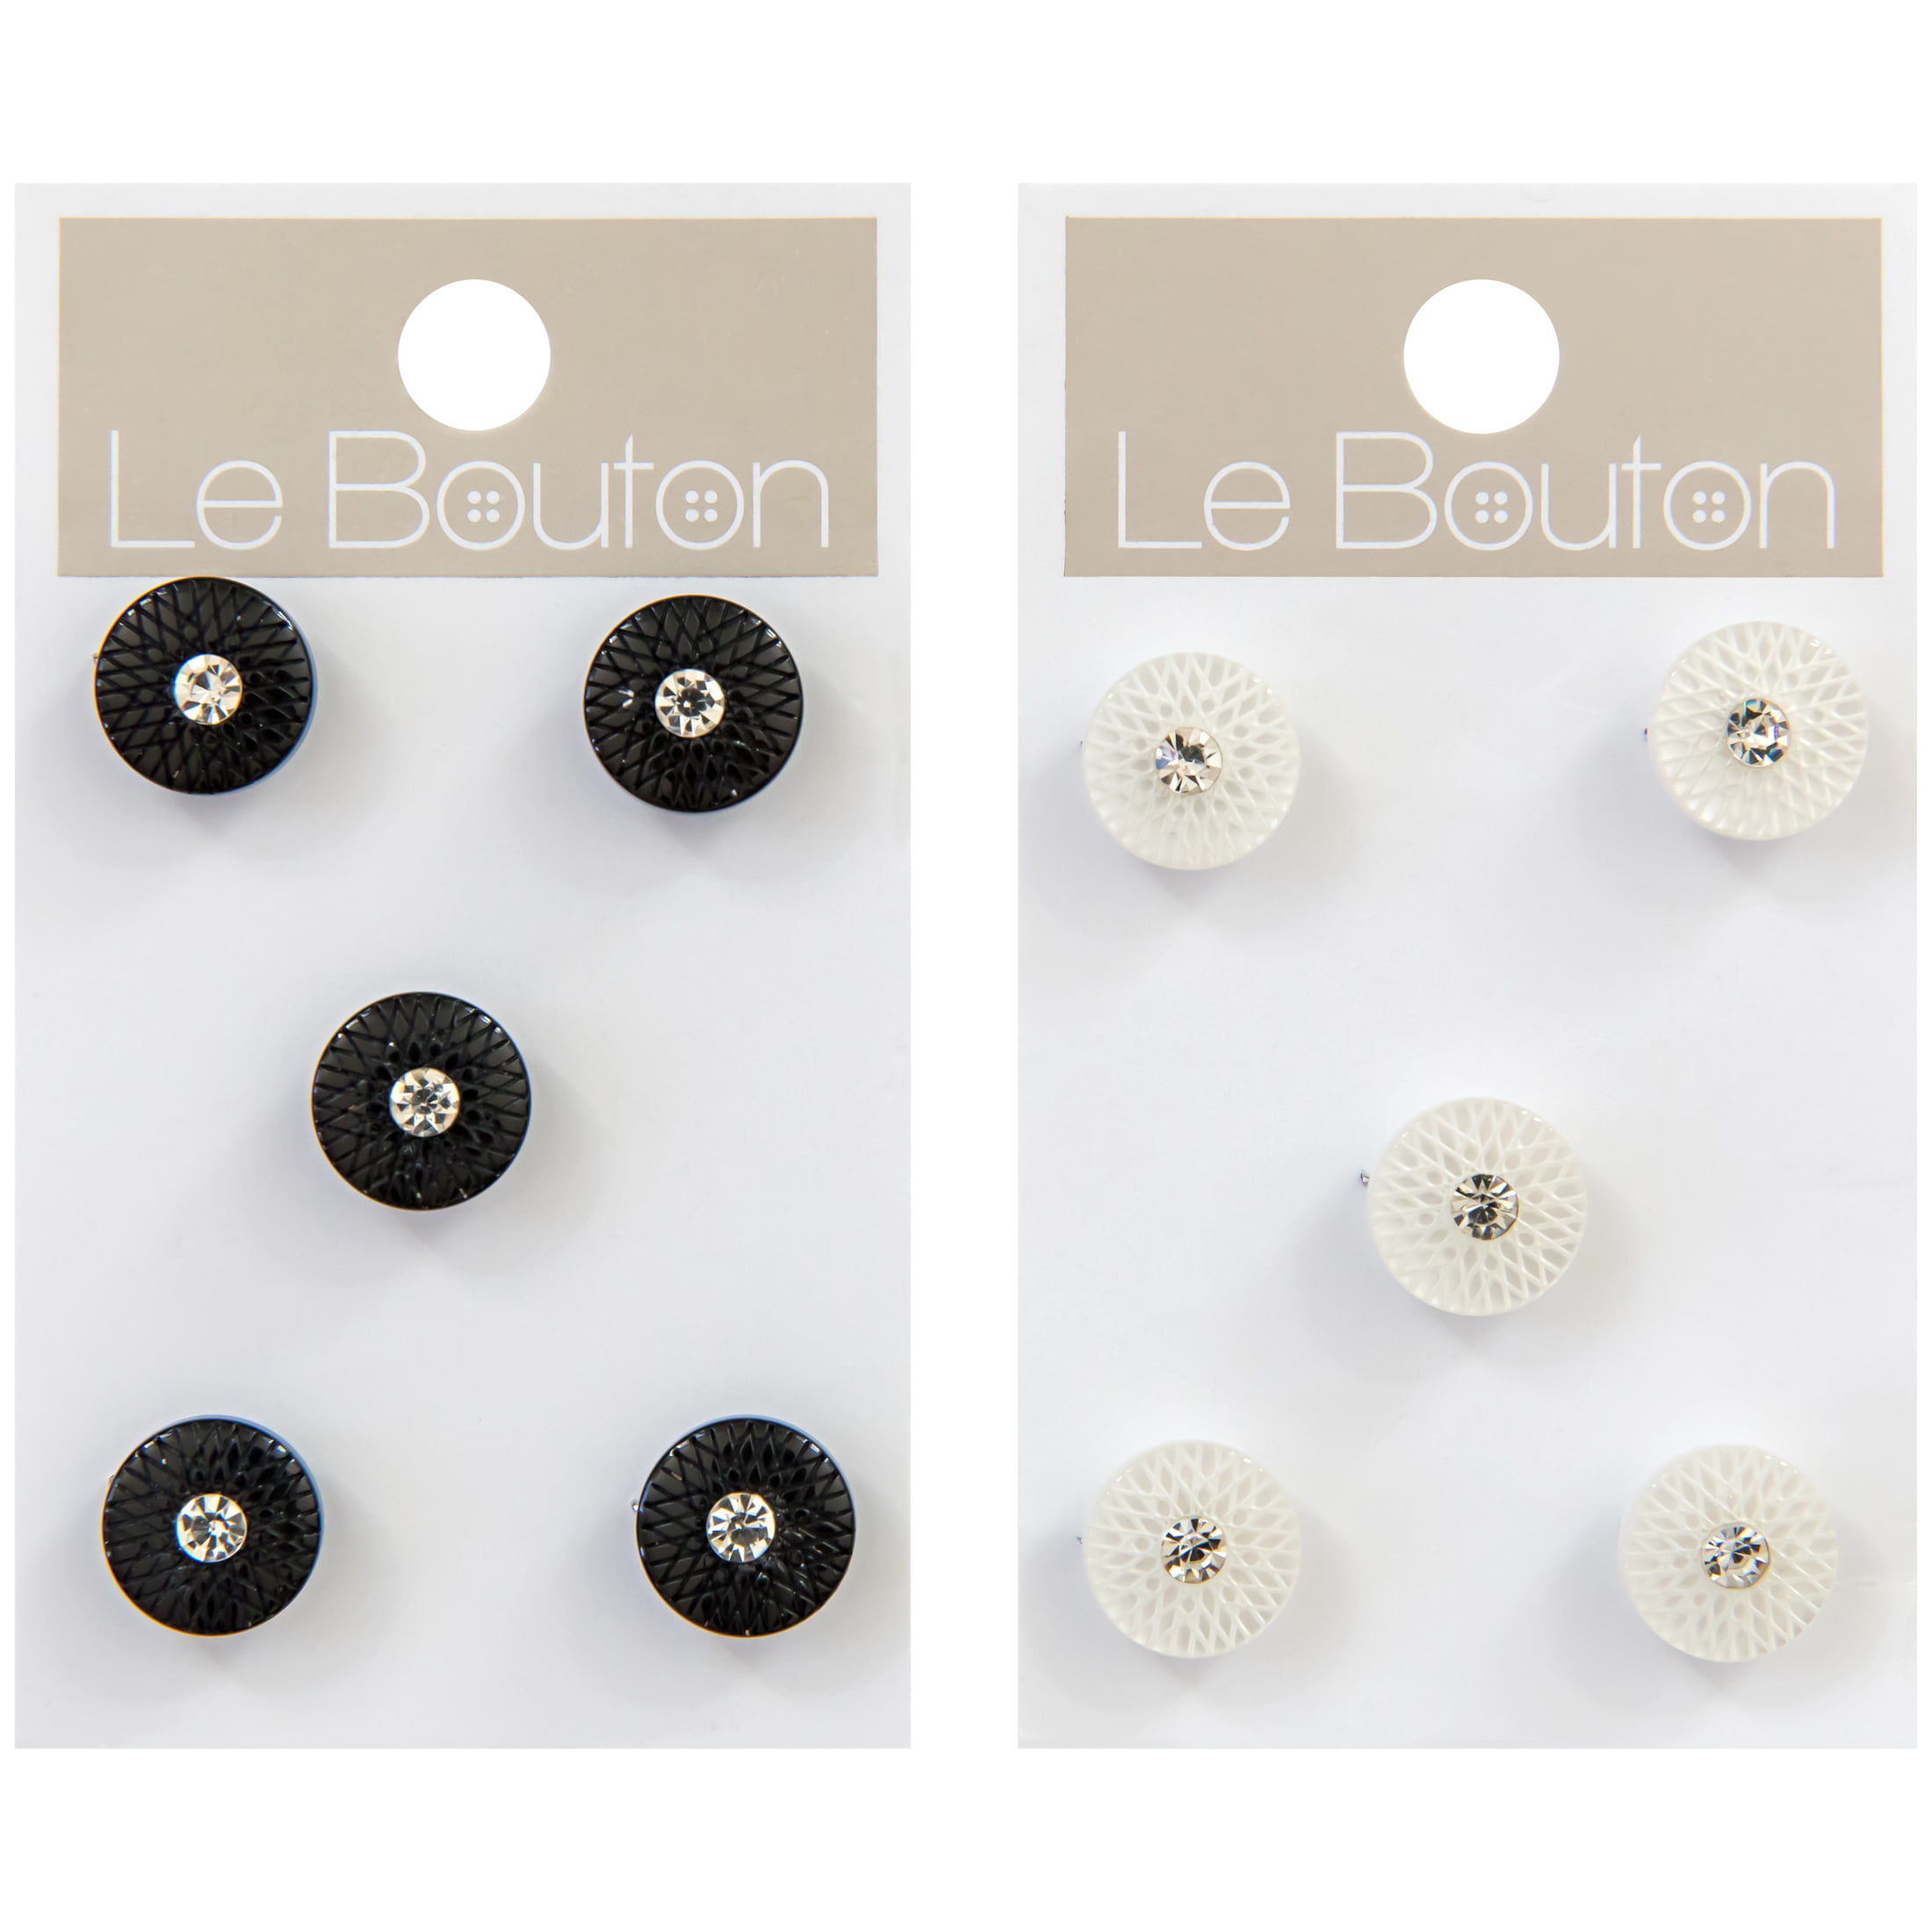 Le Bouton Black 7/16 Gem Shank Buttons, 5 Pieces 